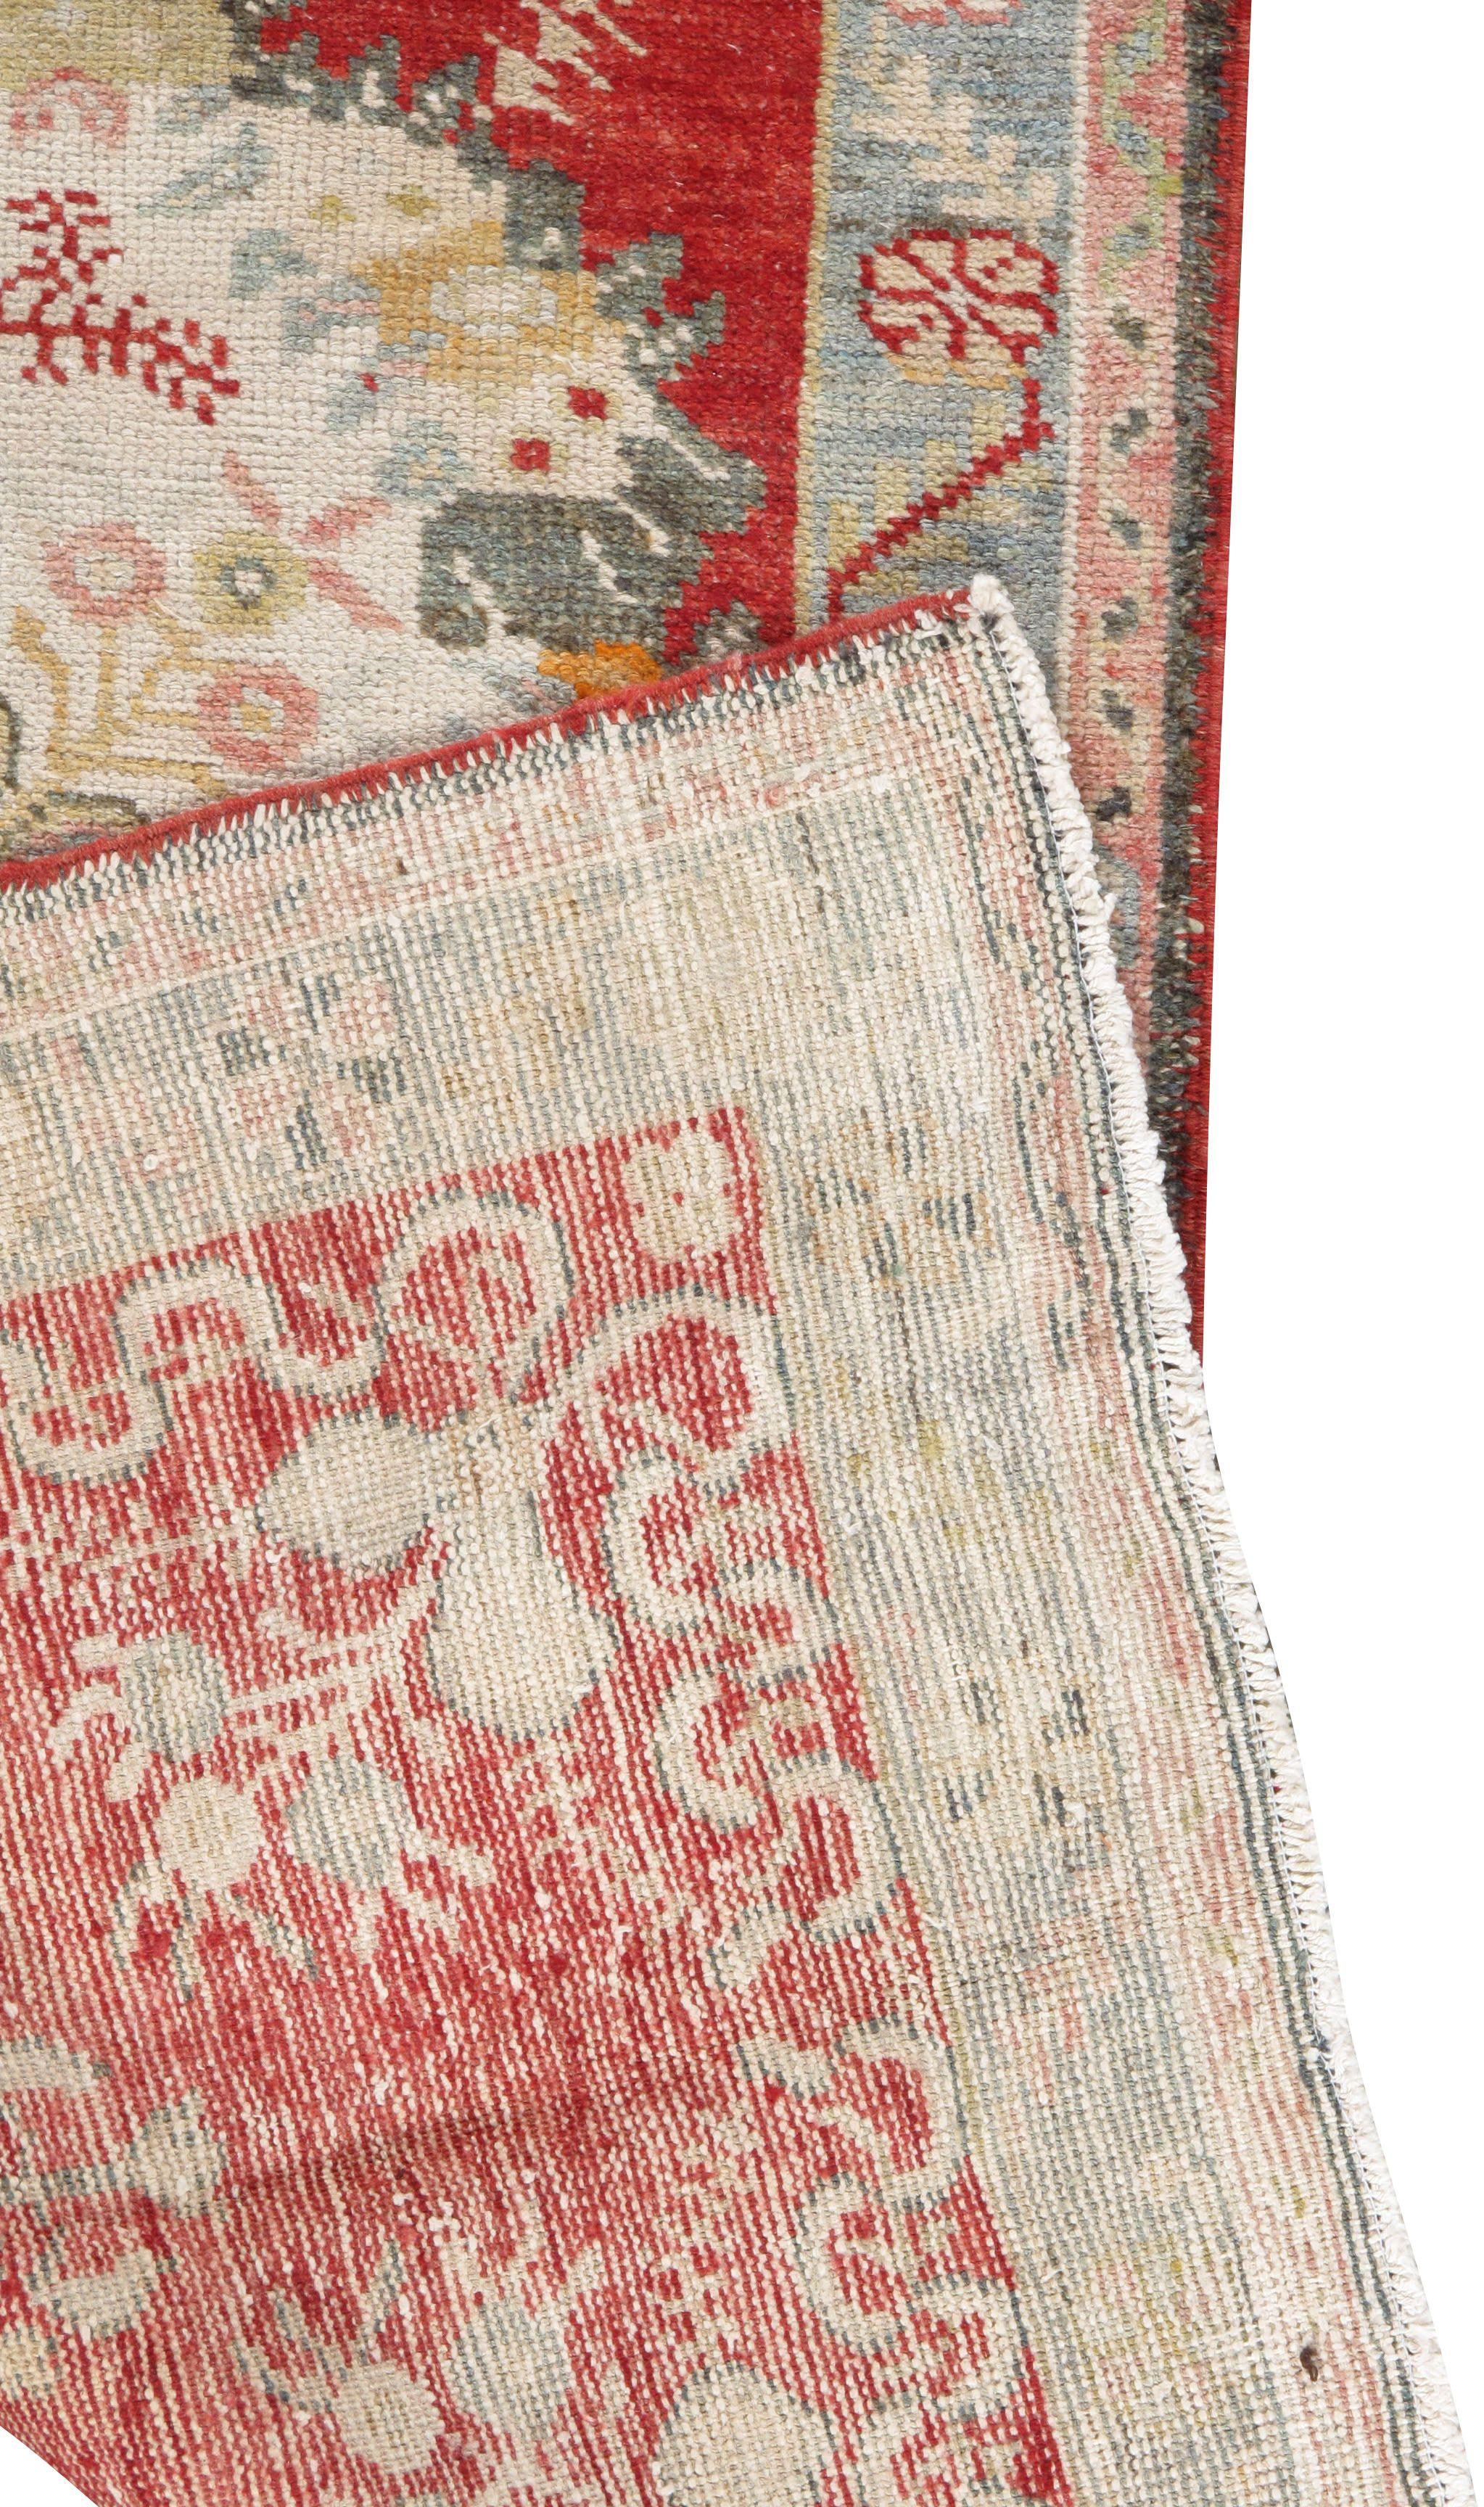 Tapis de course Oushak turc vintage, 2'11 x 11'5. Tissé à la main en Turquie où le tissage de tapis est une culture plutôt qu'un commerce. Les tapis de Turquie sont réputés pour la haute qualité de leur laine, leurs beaux motifs et leurs couleurs